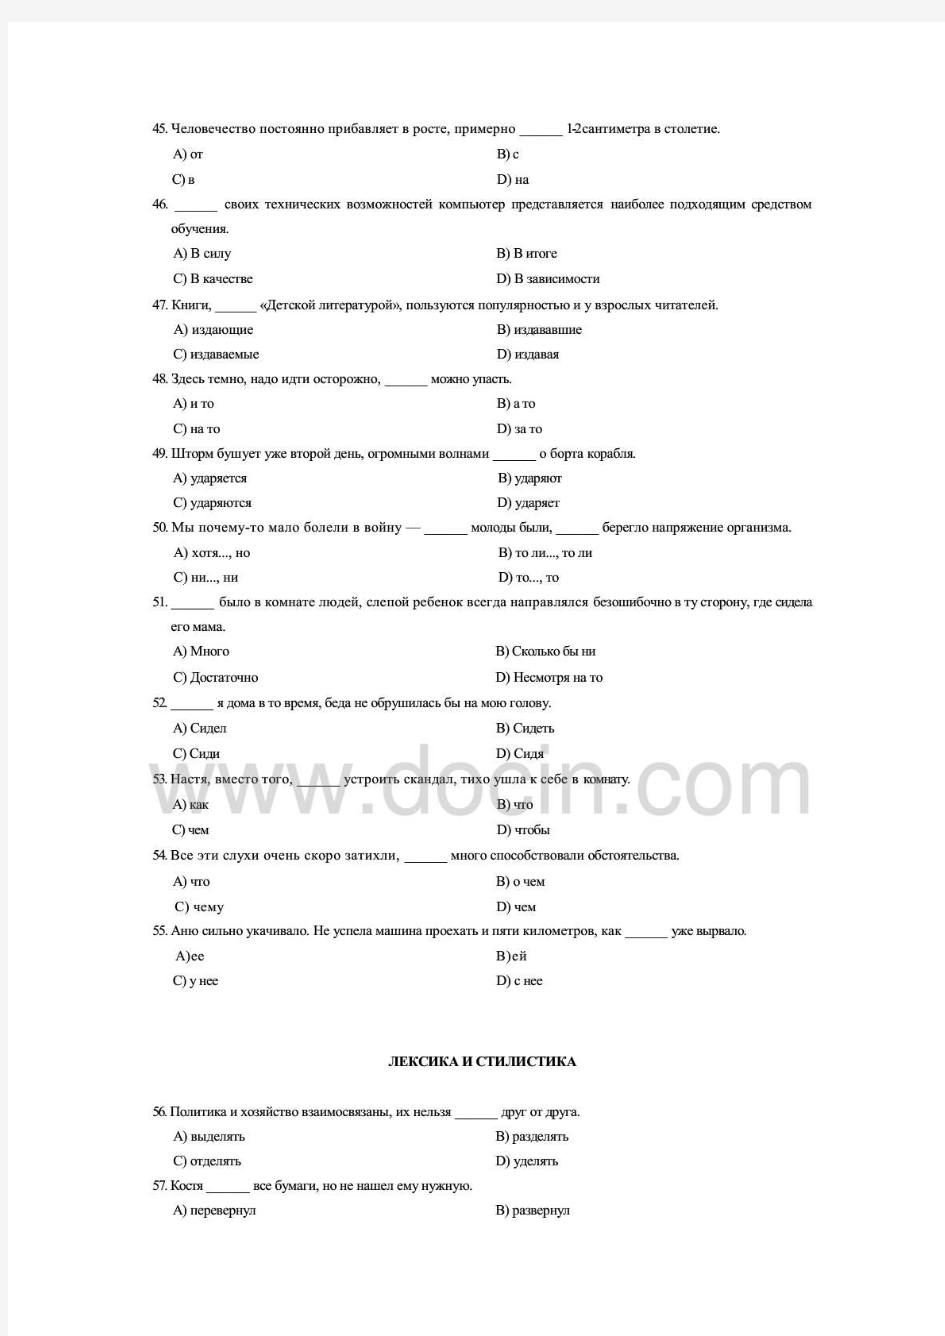 07至11年俄语八级语法词汇真题及答案详解,适合打印